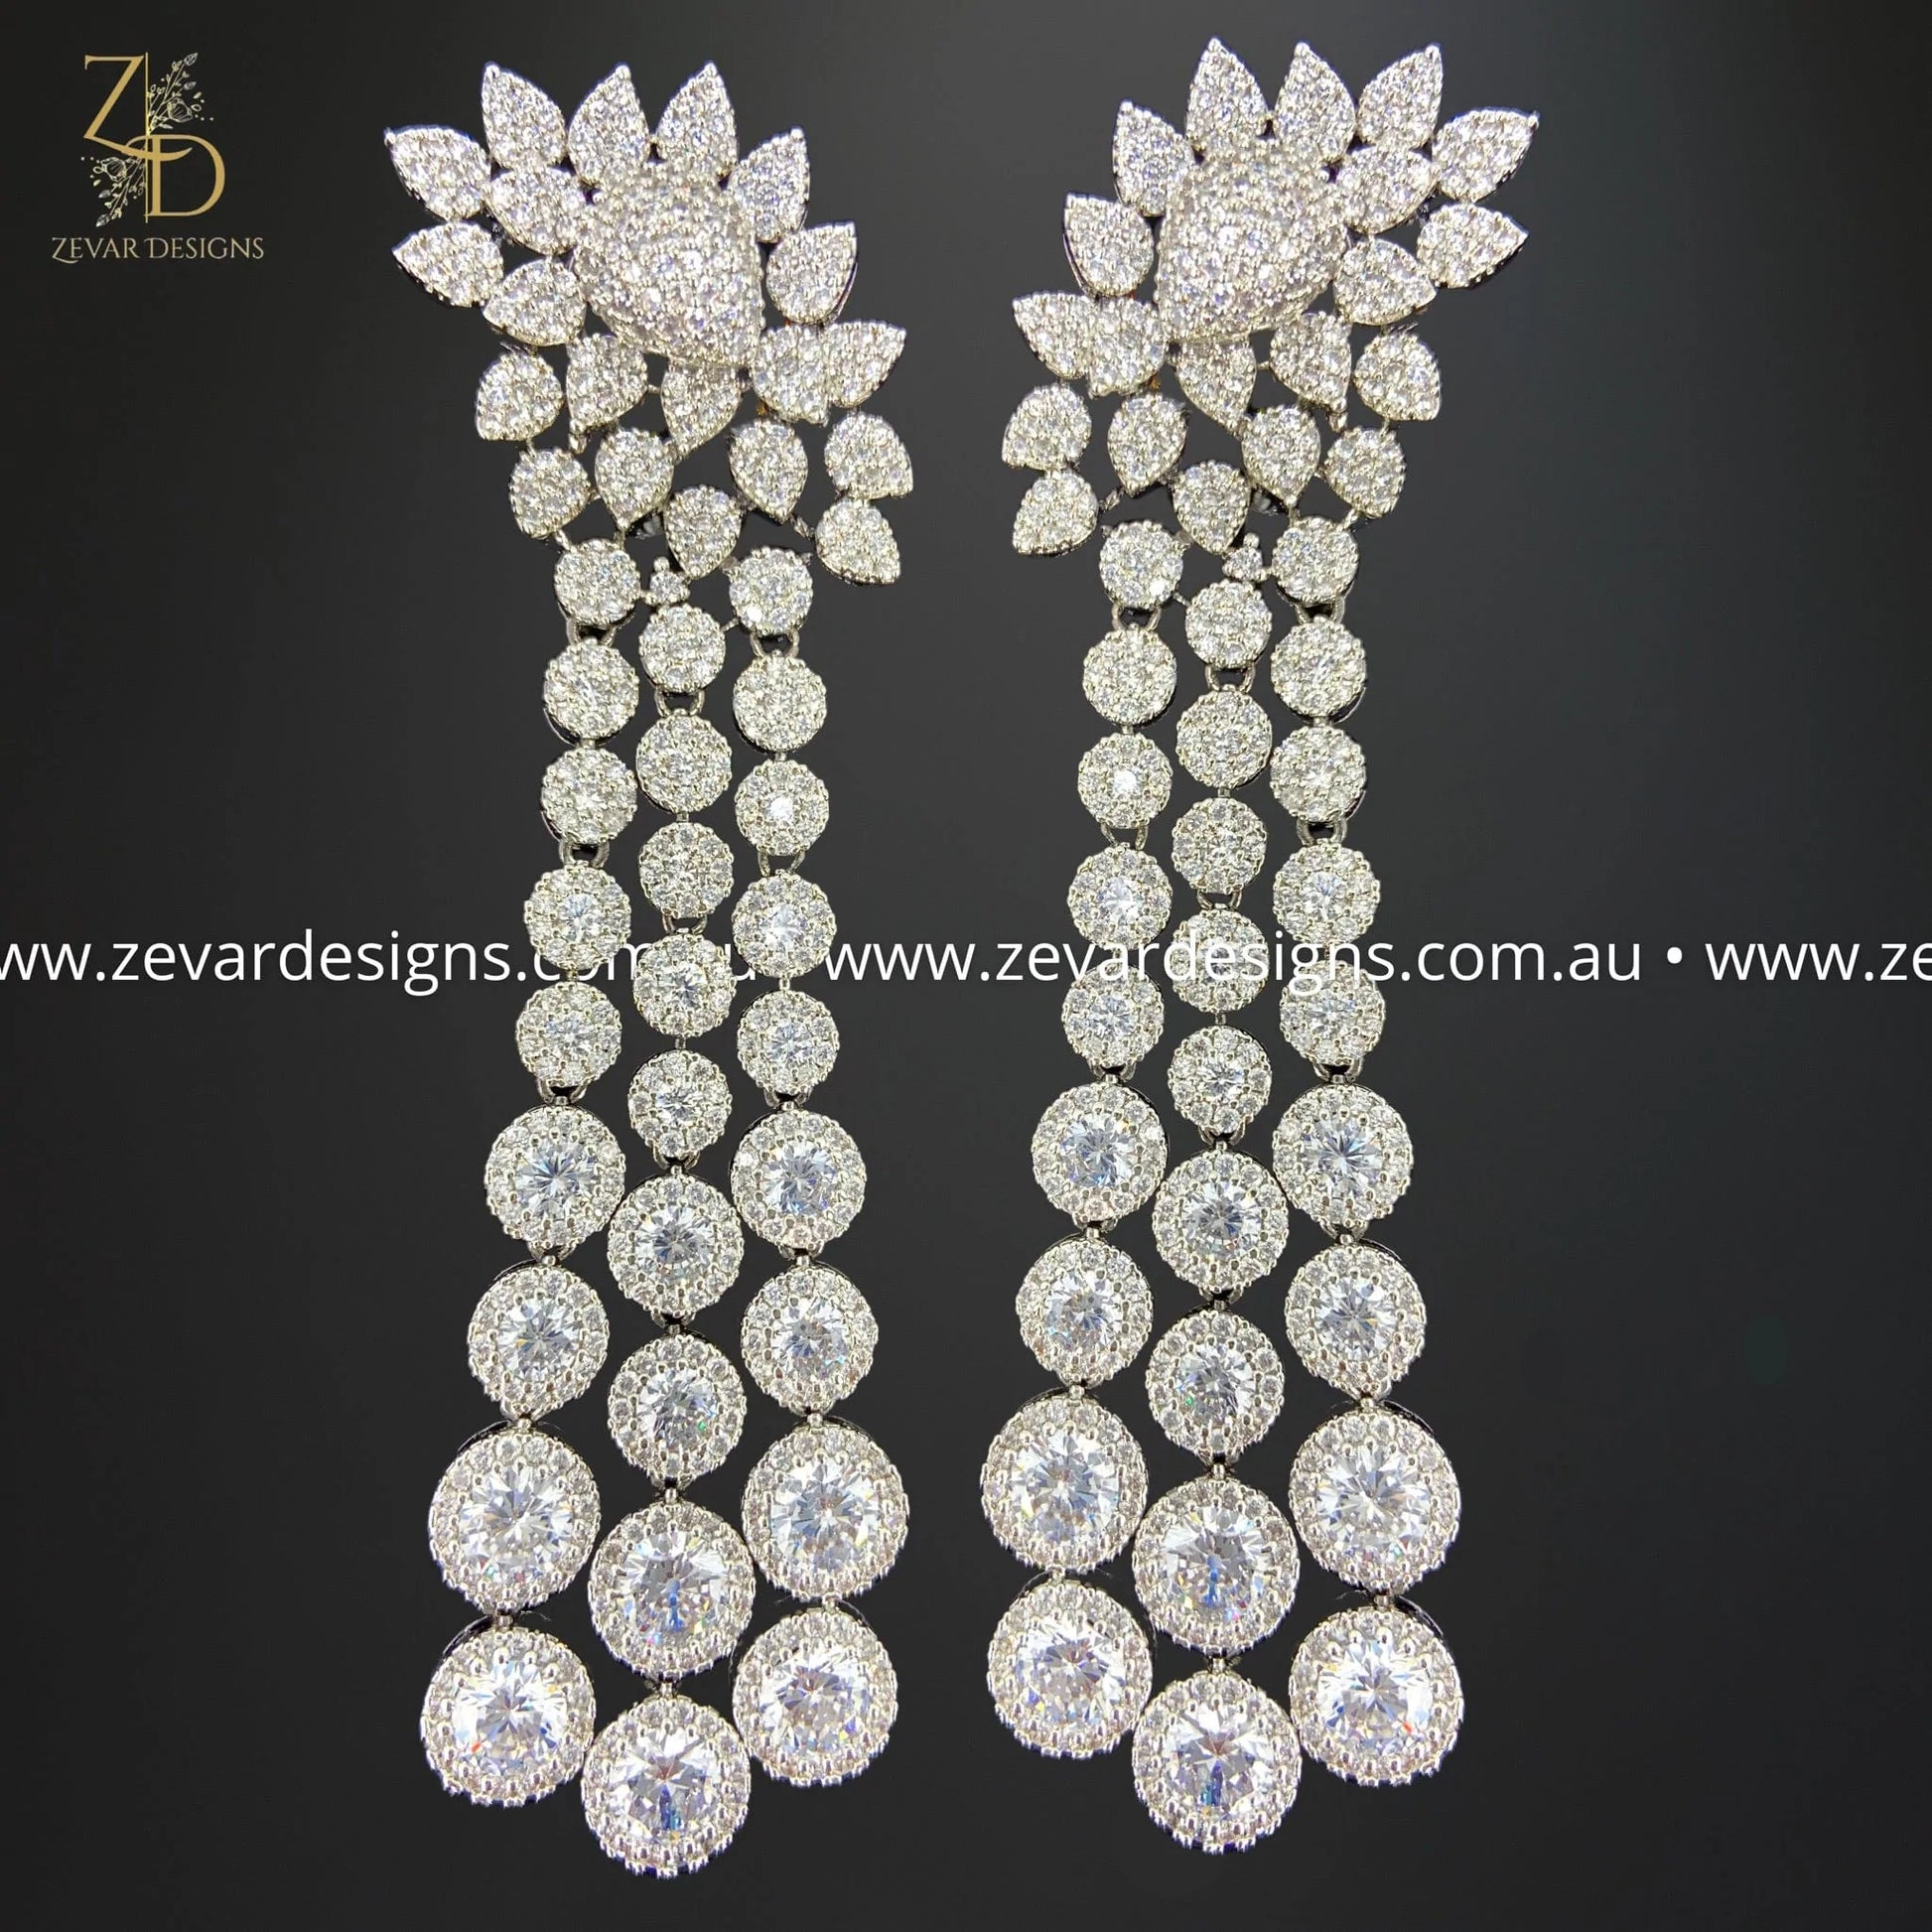 Zevar Designs Indo-Western Earrings AD/Zircon Earrings in Black Finish